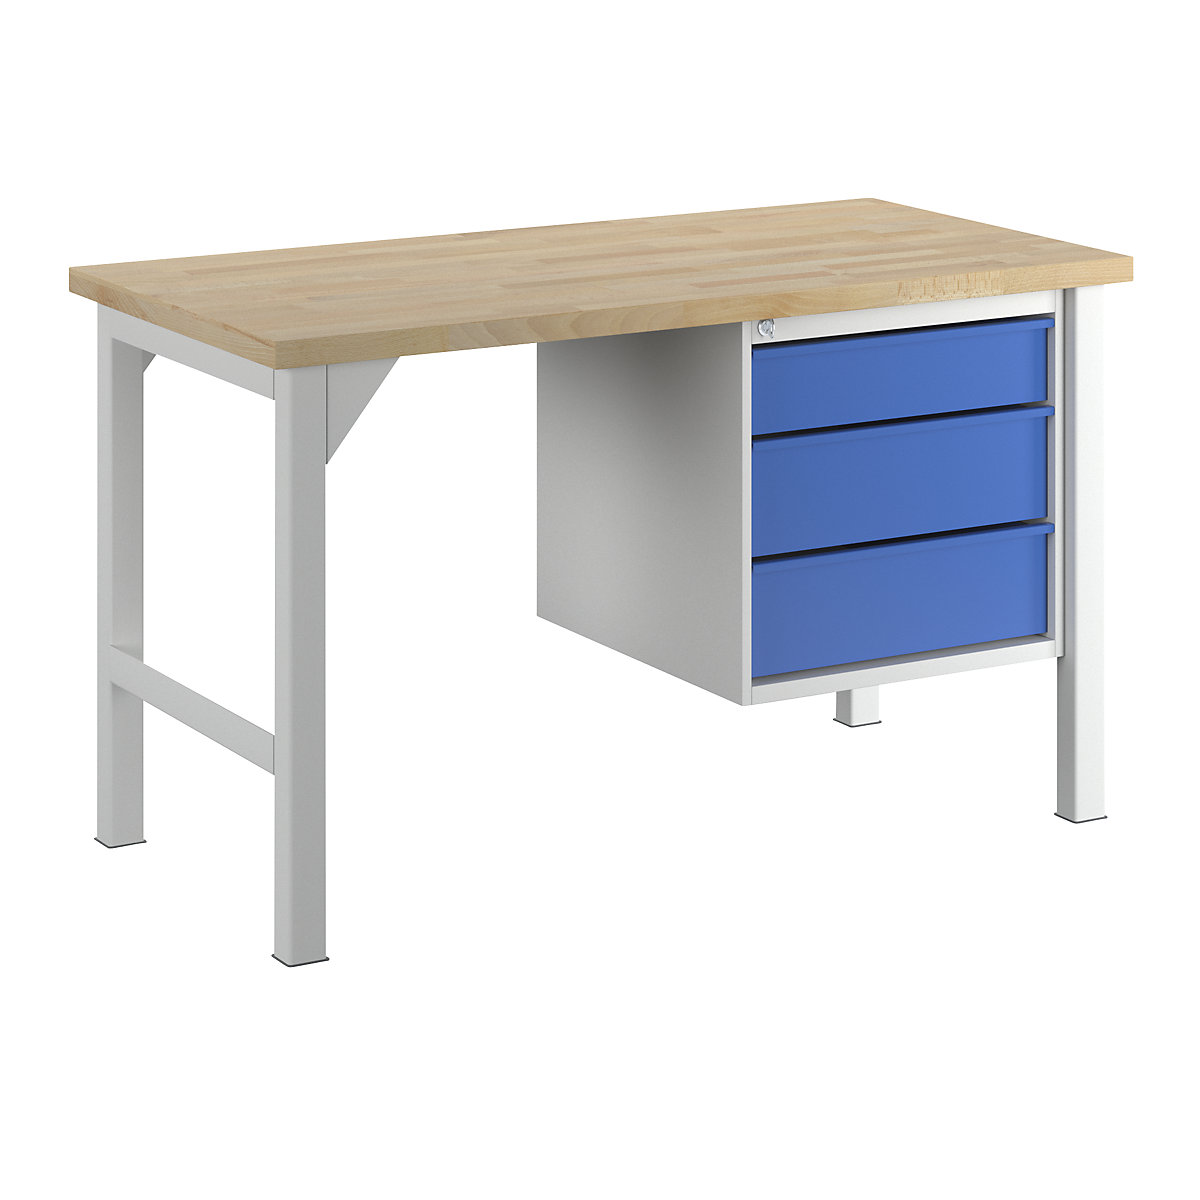 Stół warsztatowy, konstrukcja ramowa, szer. 1500 mm, 3 szuflady: 1 x 125 / 2 x 175 mm, jasnoszary/niebieski gencjanowy-1